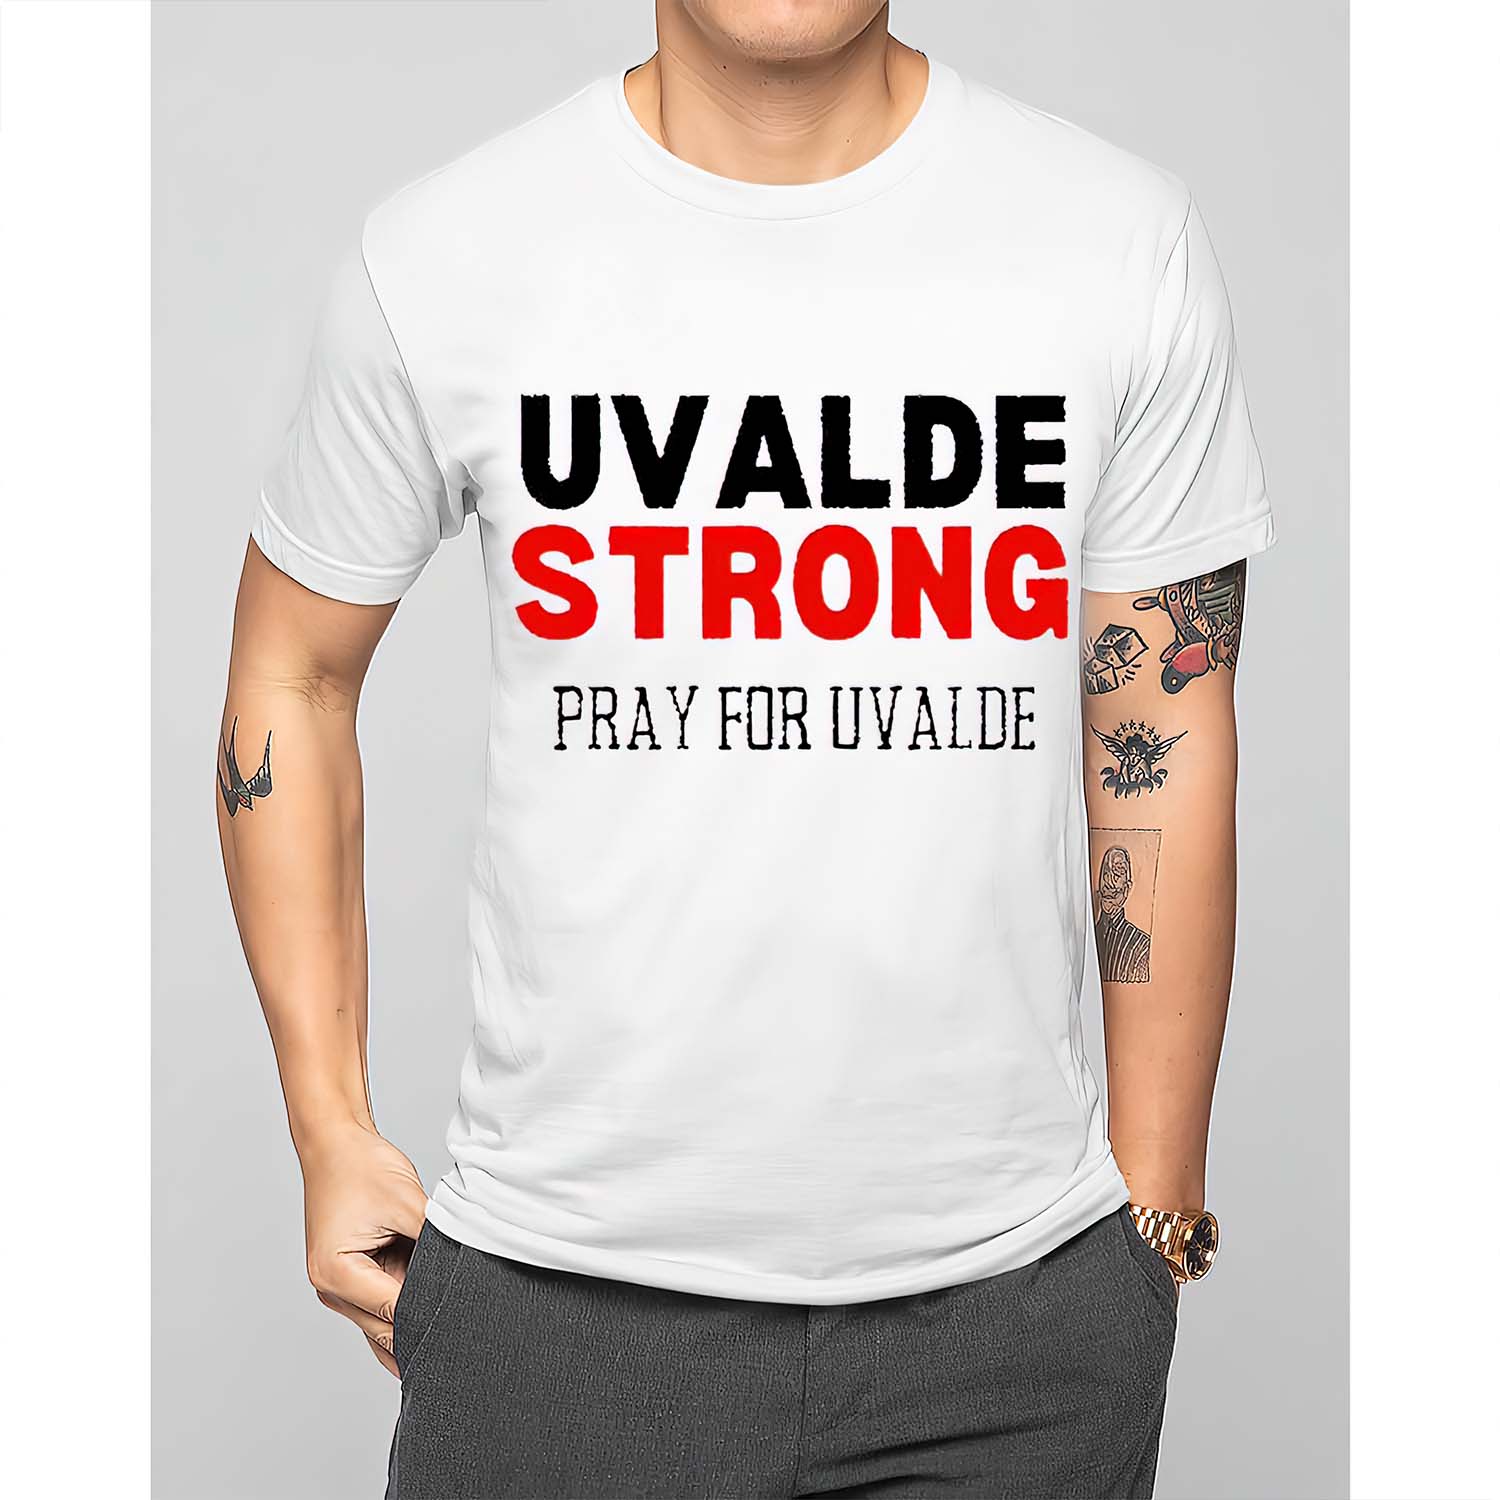 Uvalde Strong Pray For Uvalde Shirt